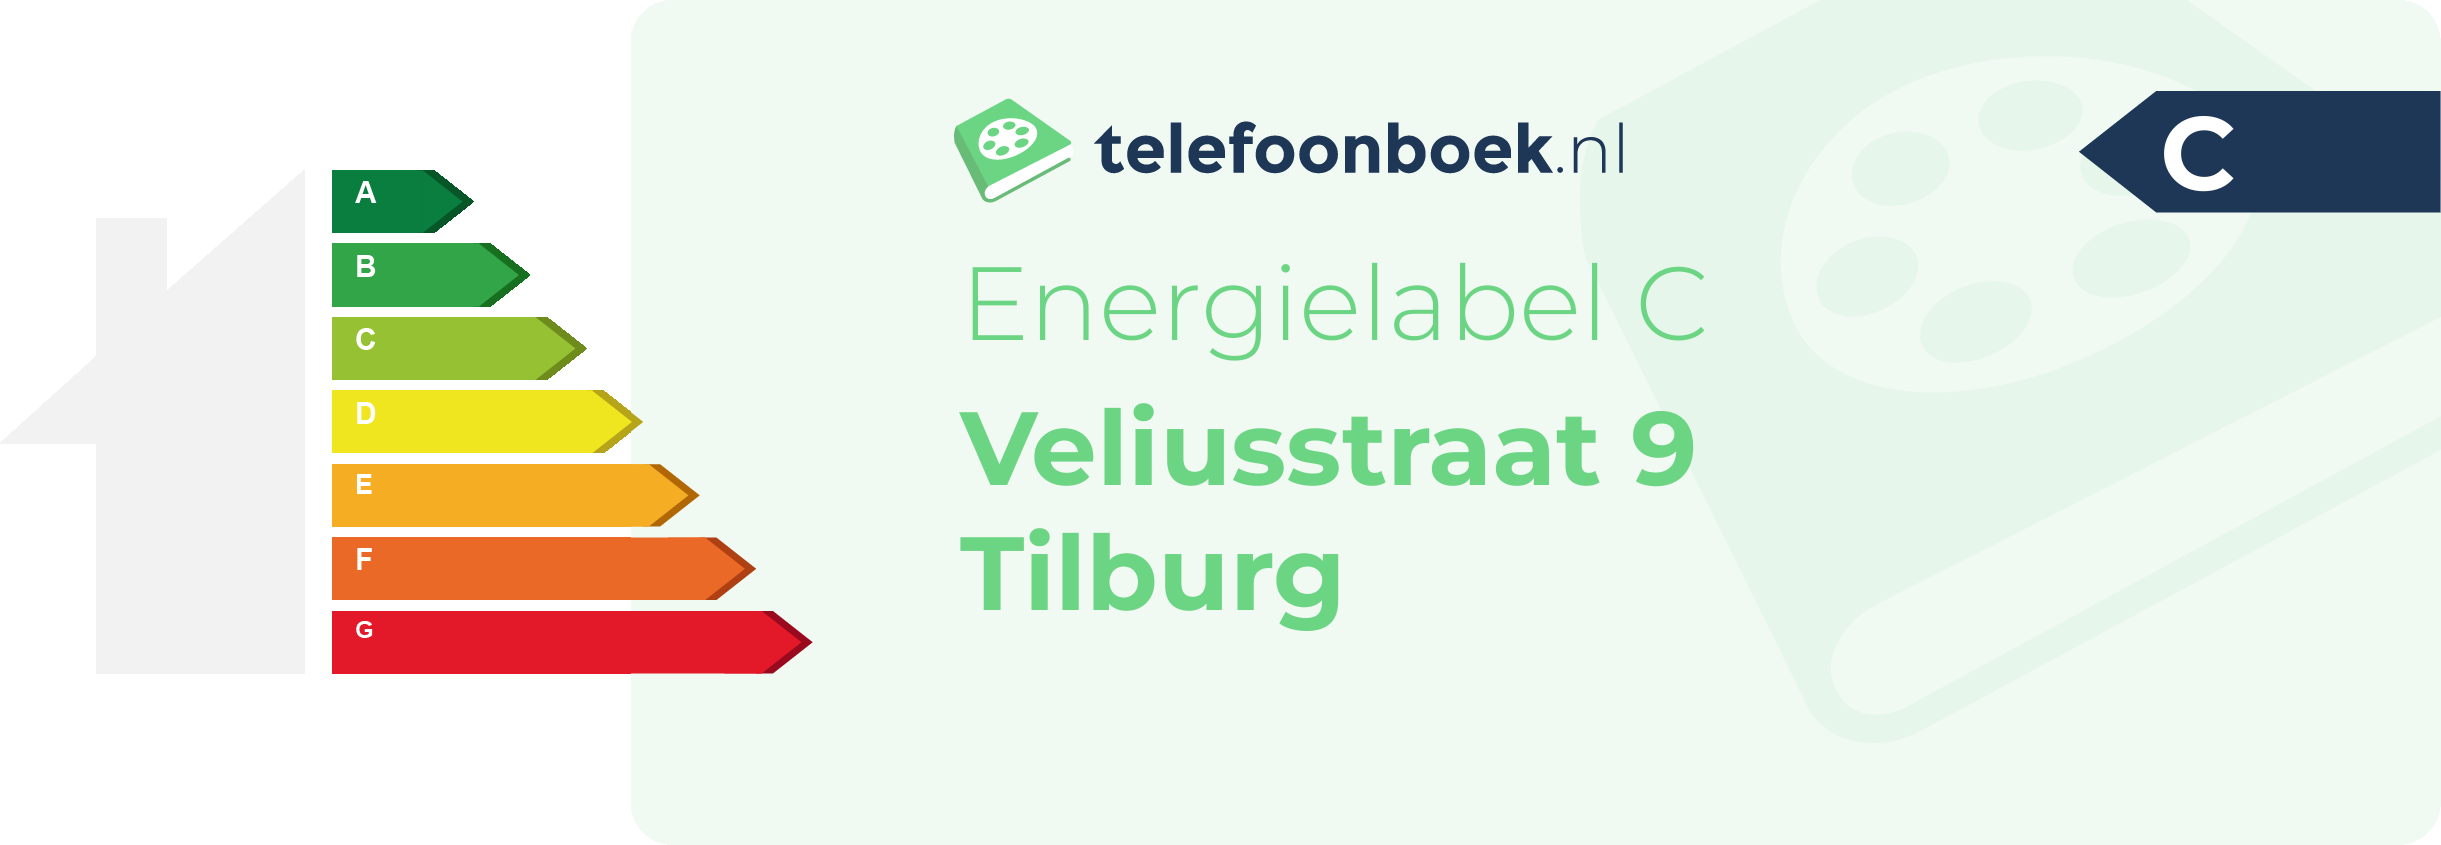 Energielabel Veliusstraat 9 Tilburg